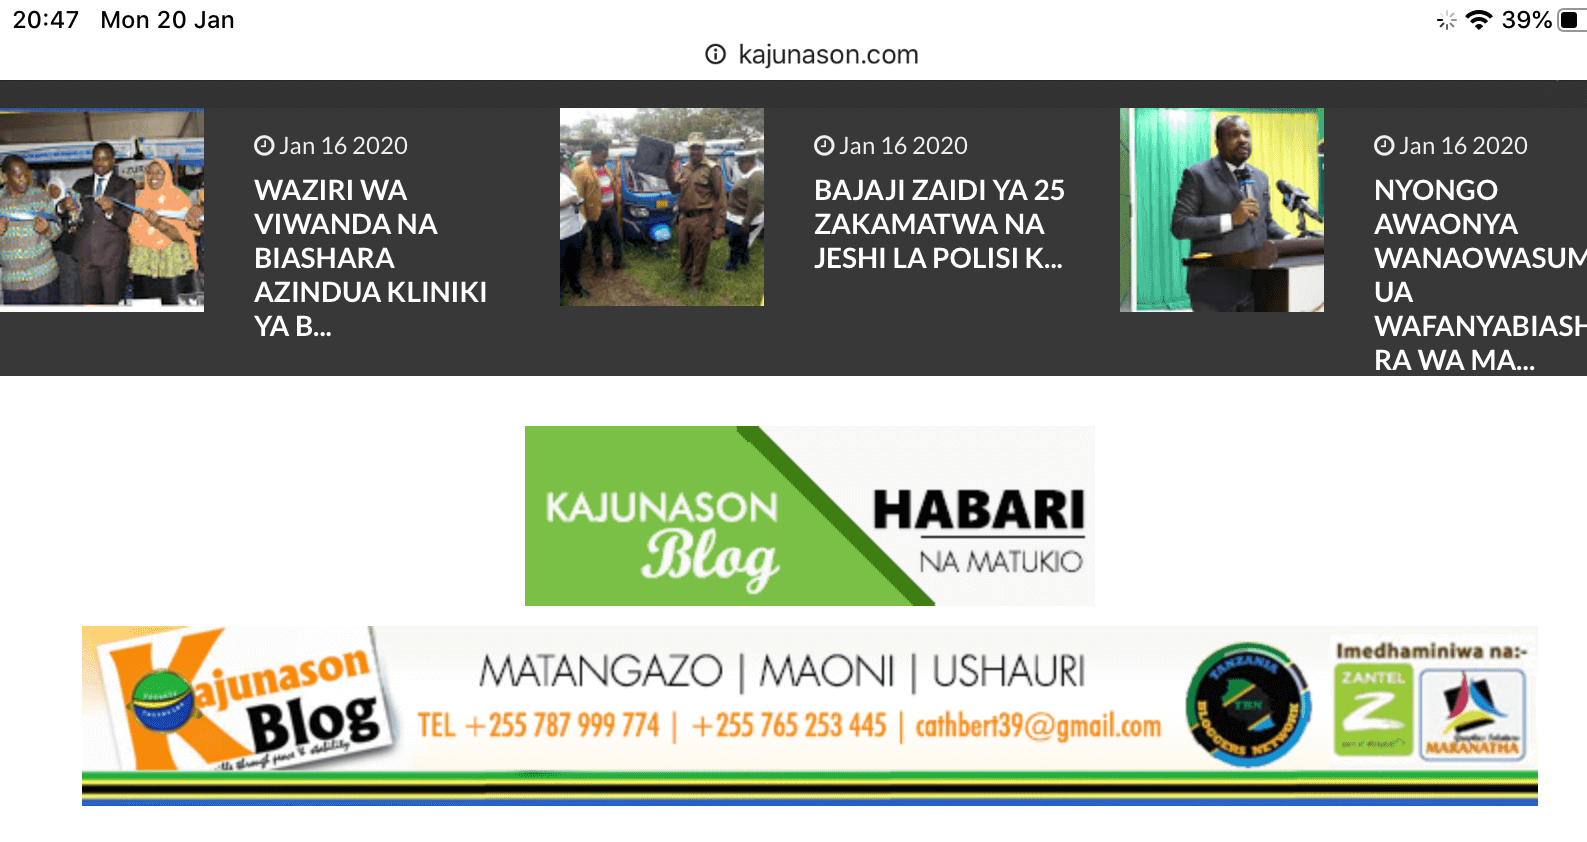 Tanzania newspapers 19 kajunason blog e1606634655758